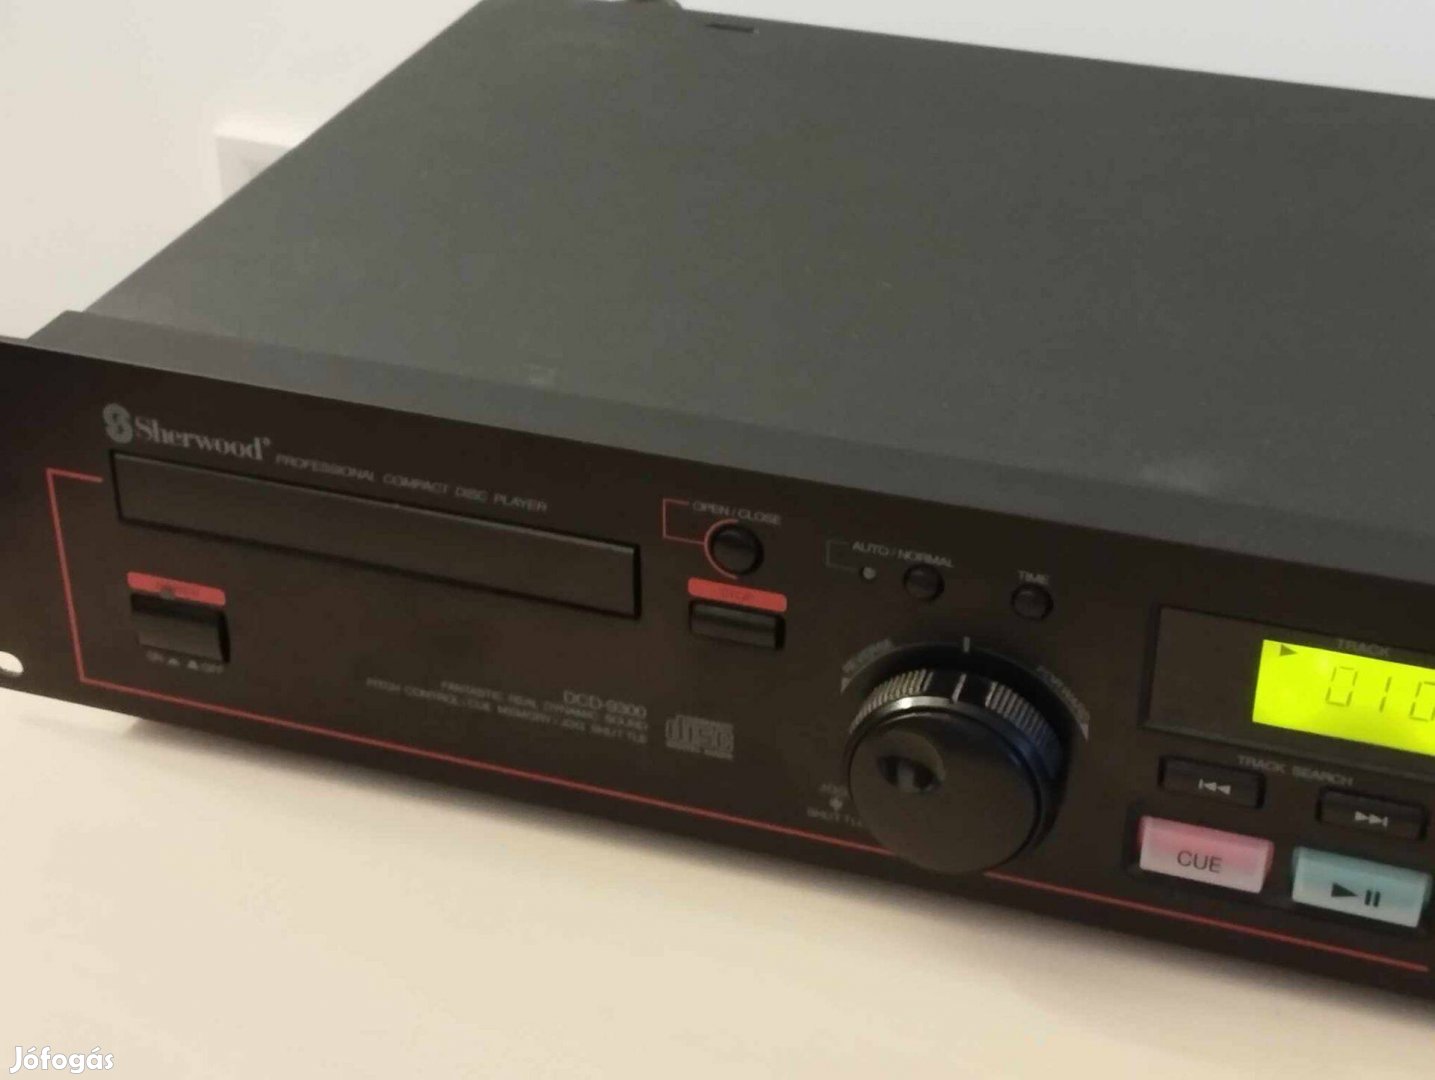 Sherwood DCD-9300 Professional CD játszó alkalmi áron